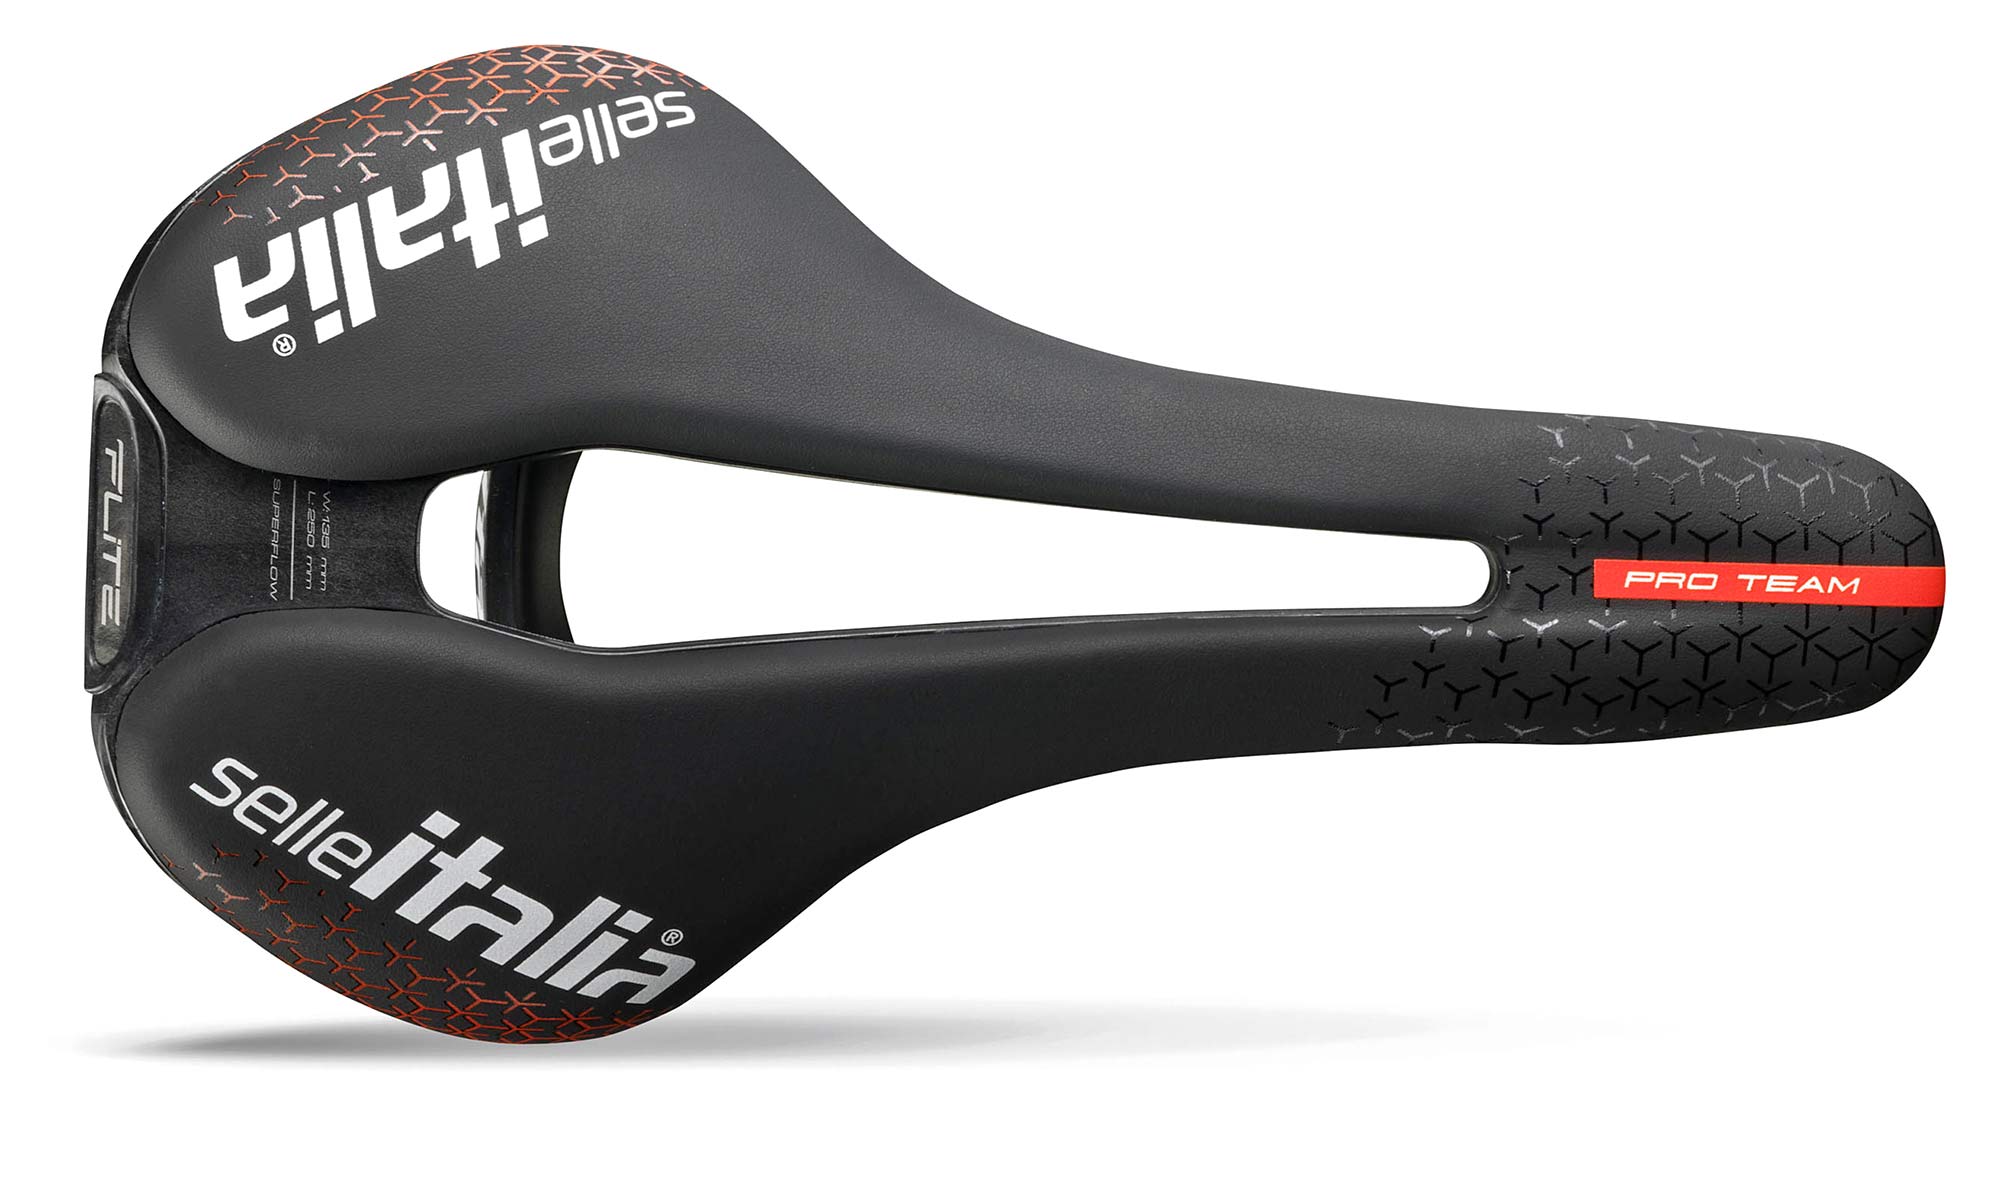 Selle Italia Flite Boost Pro Team Kit Carbonio Superflow road saddle, top shape